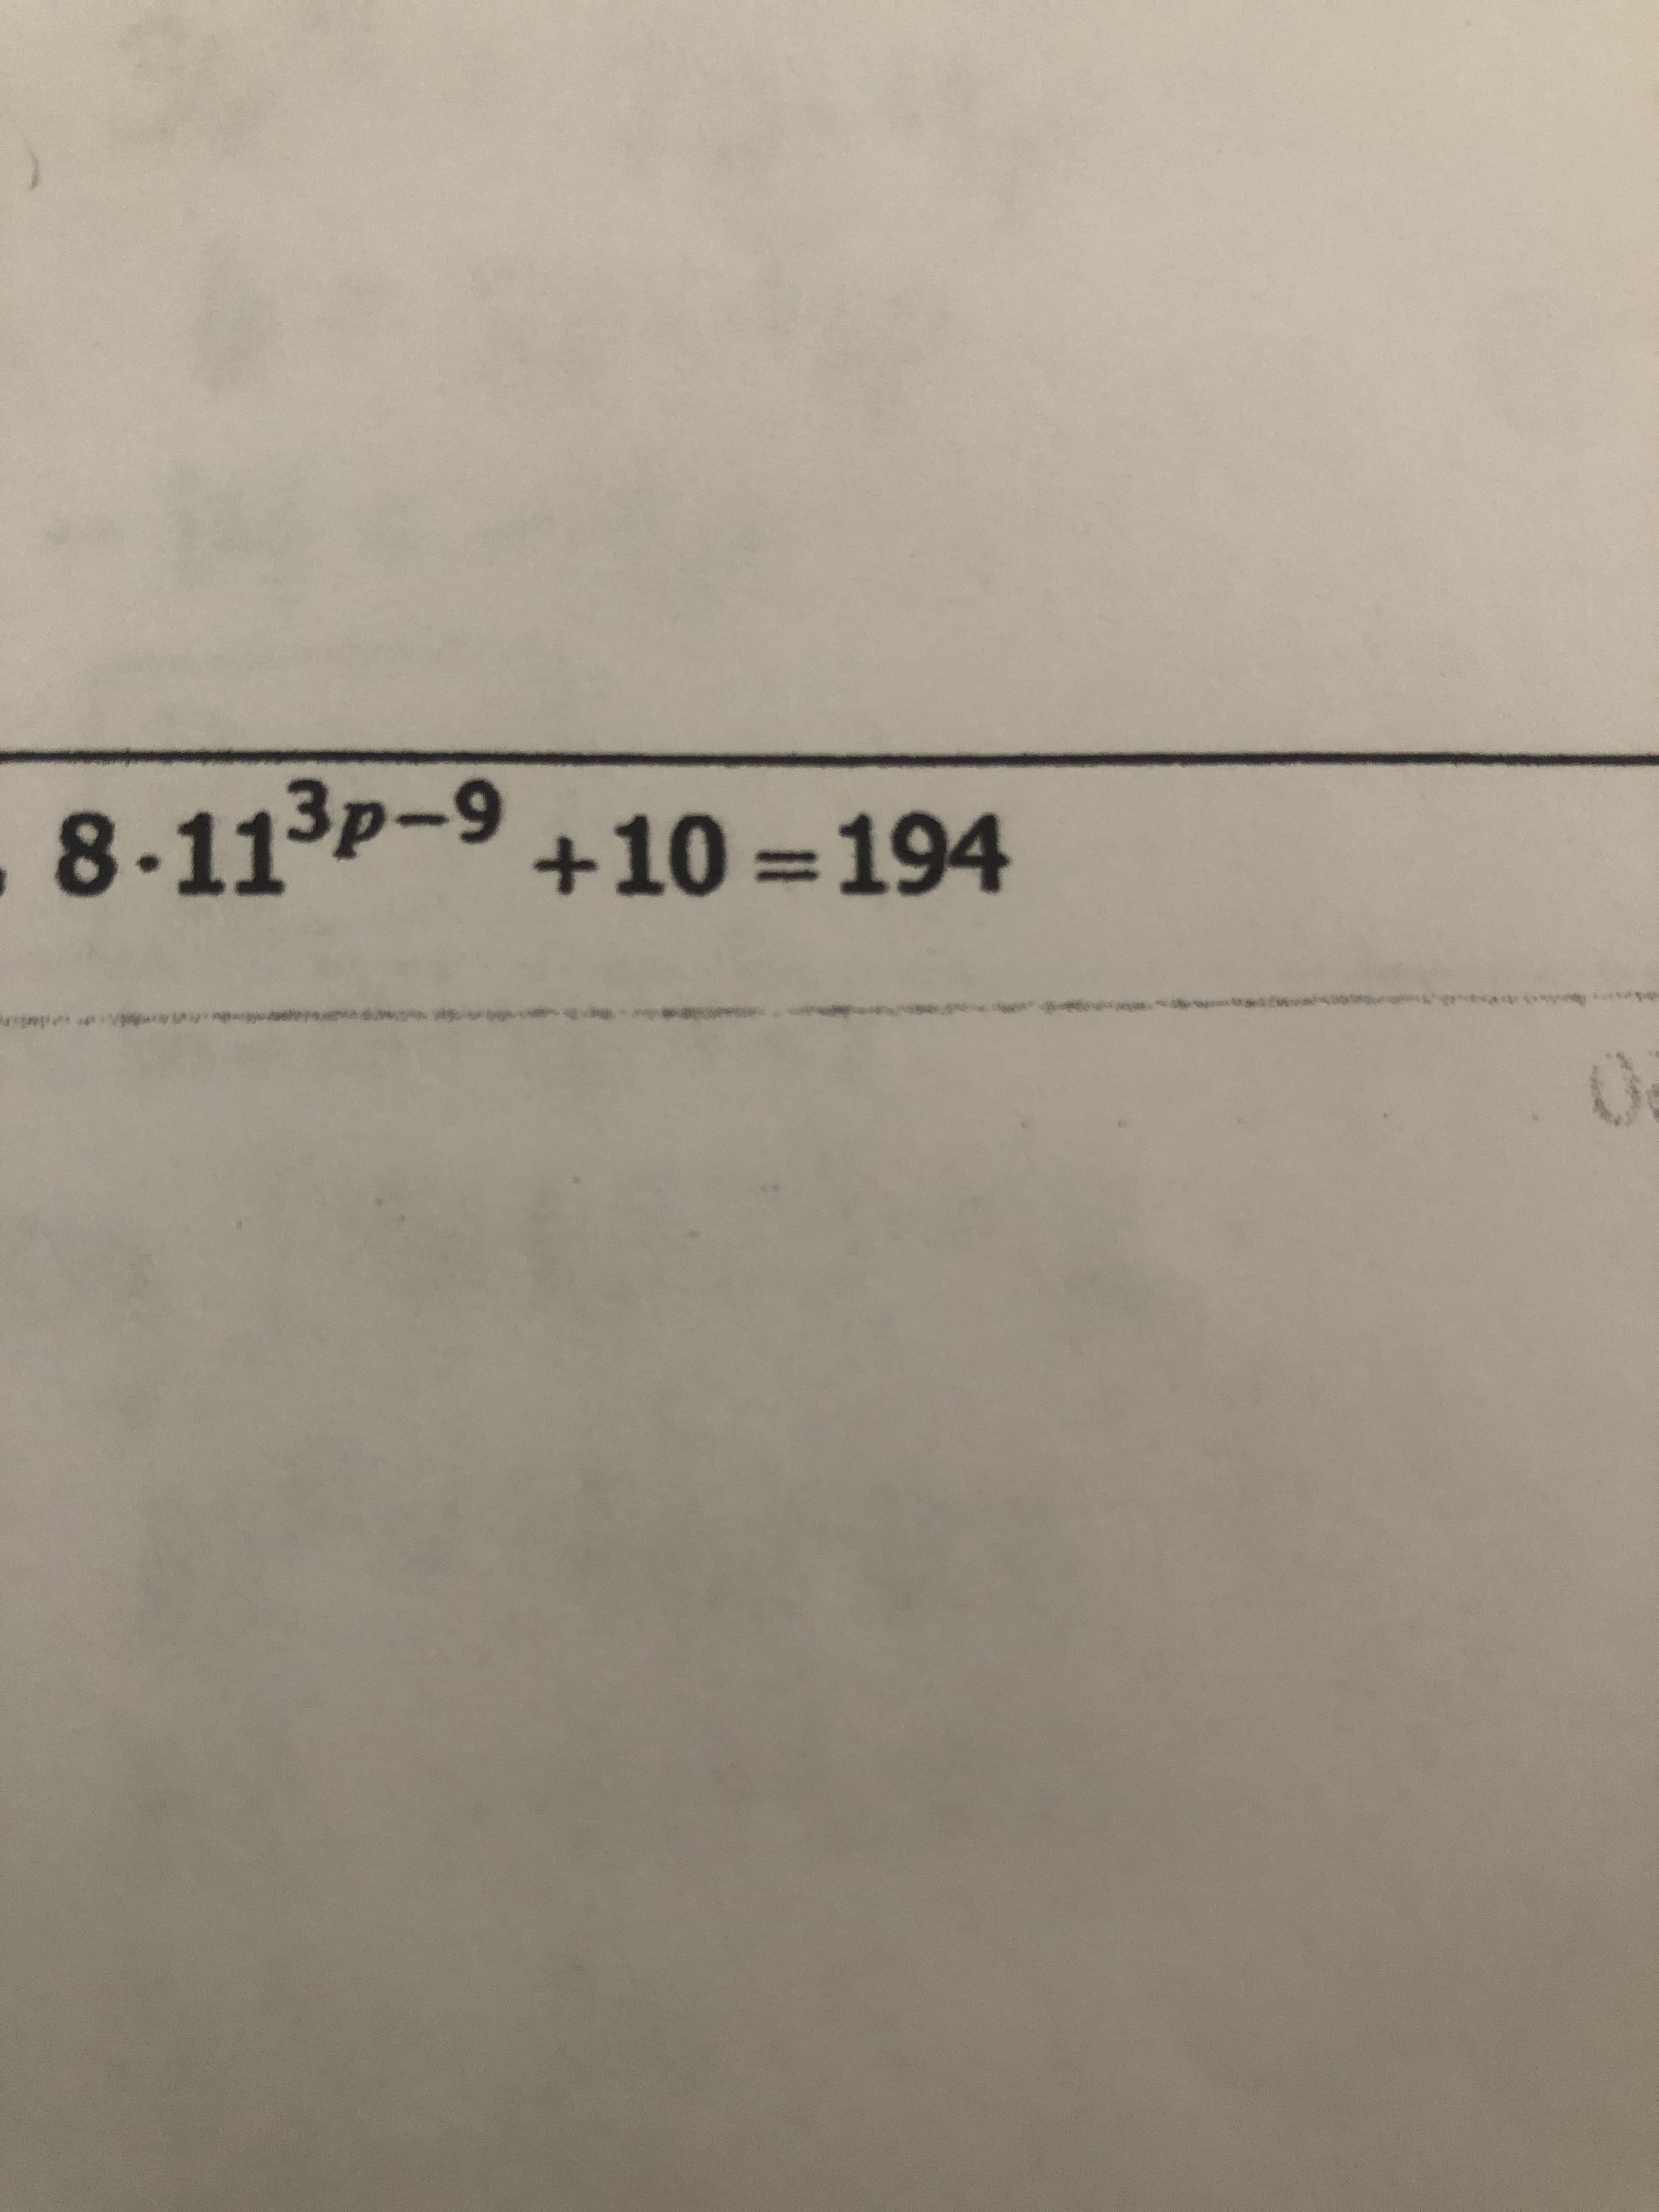 8-113p-9
+10=194
%3D
